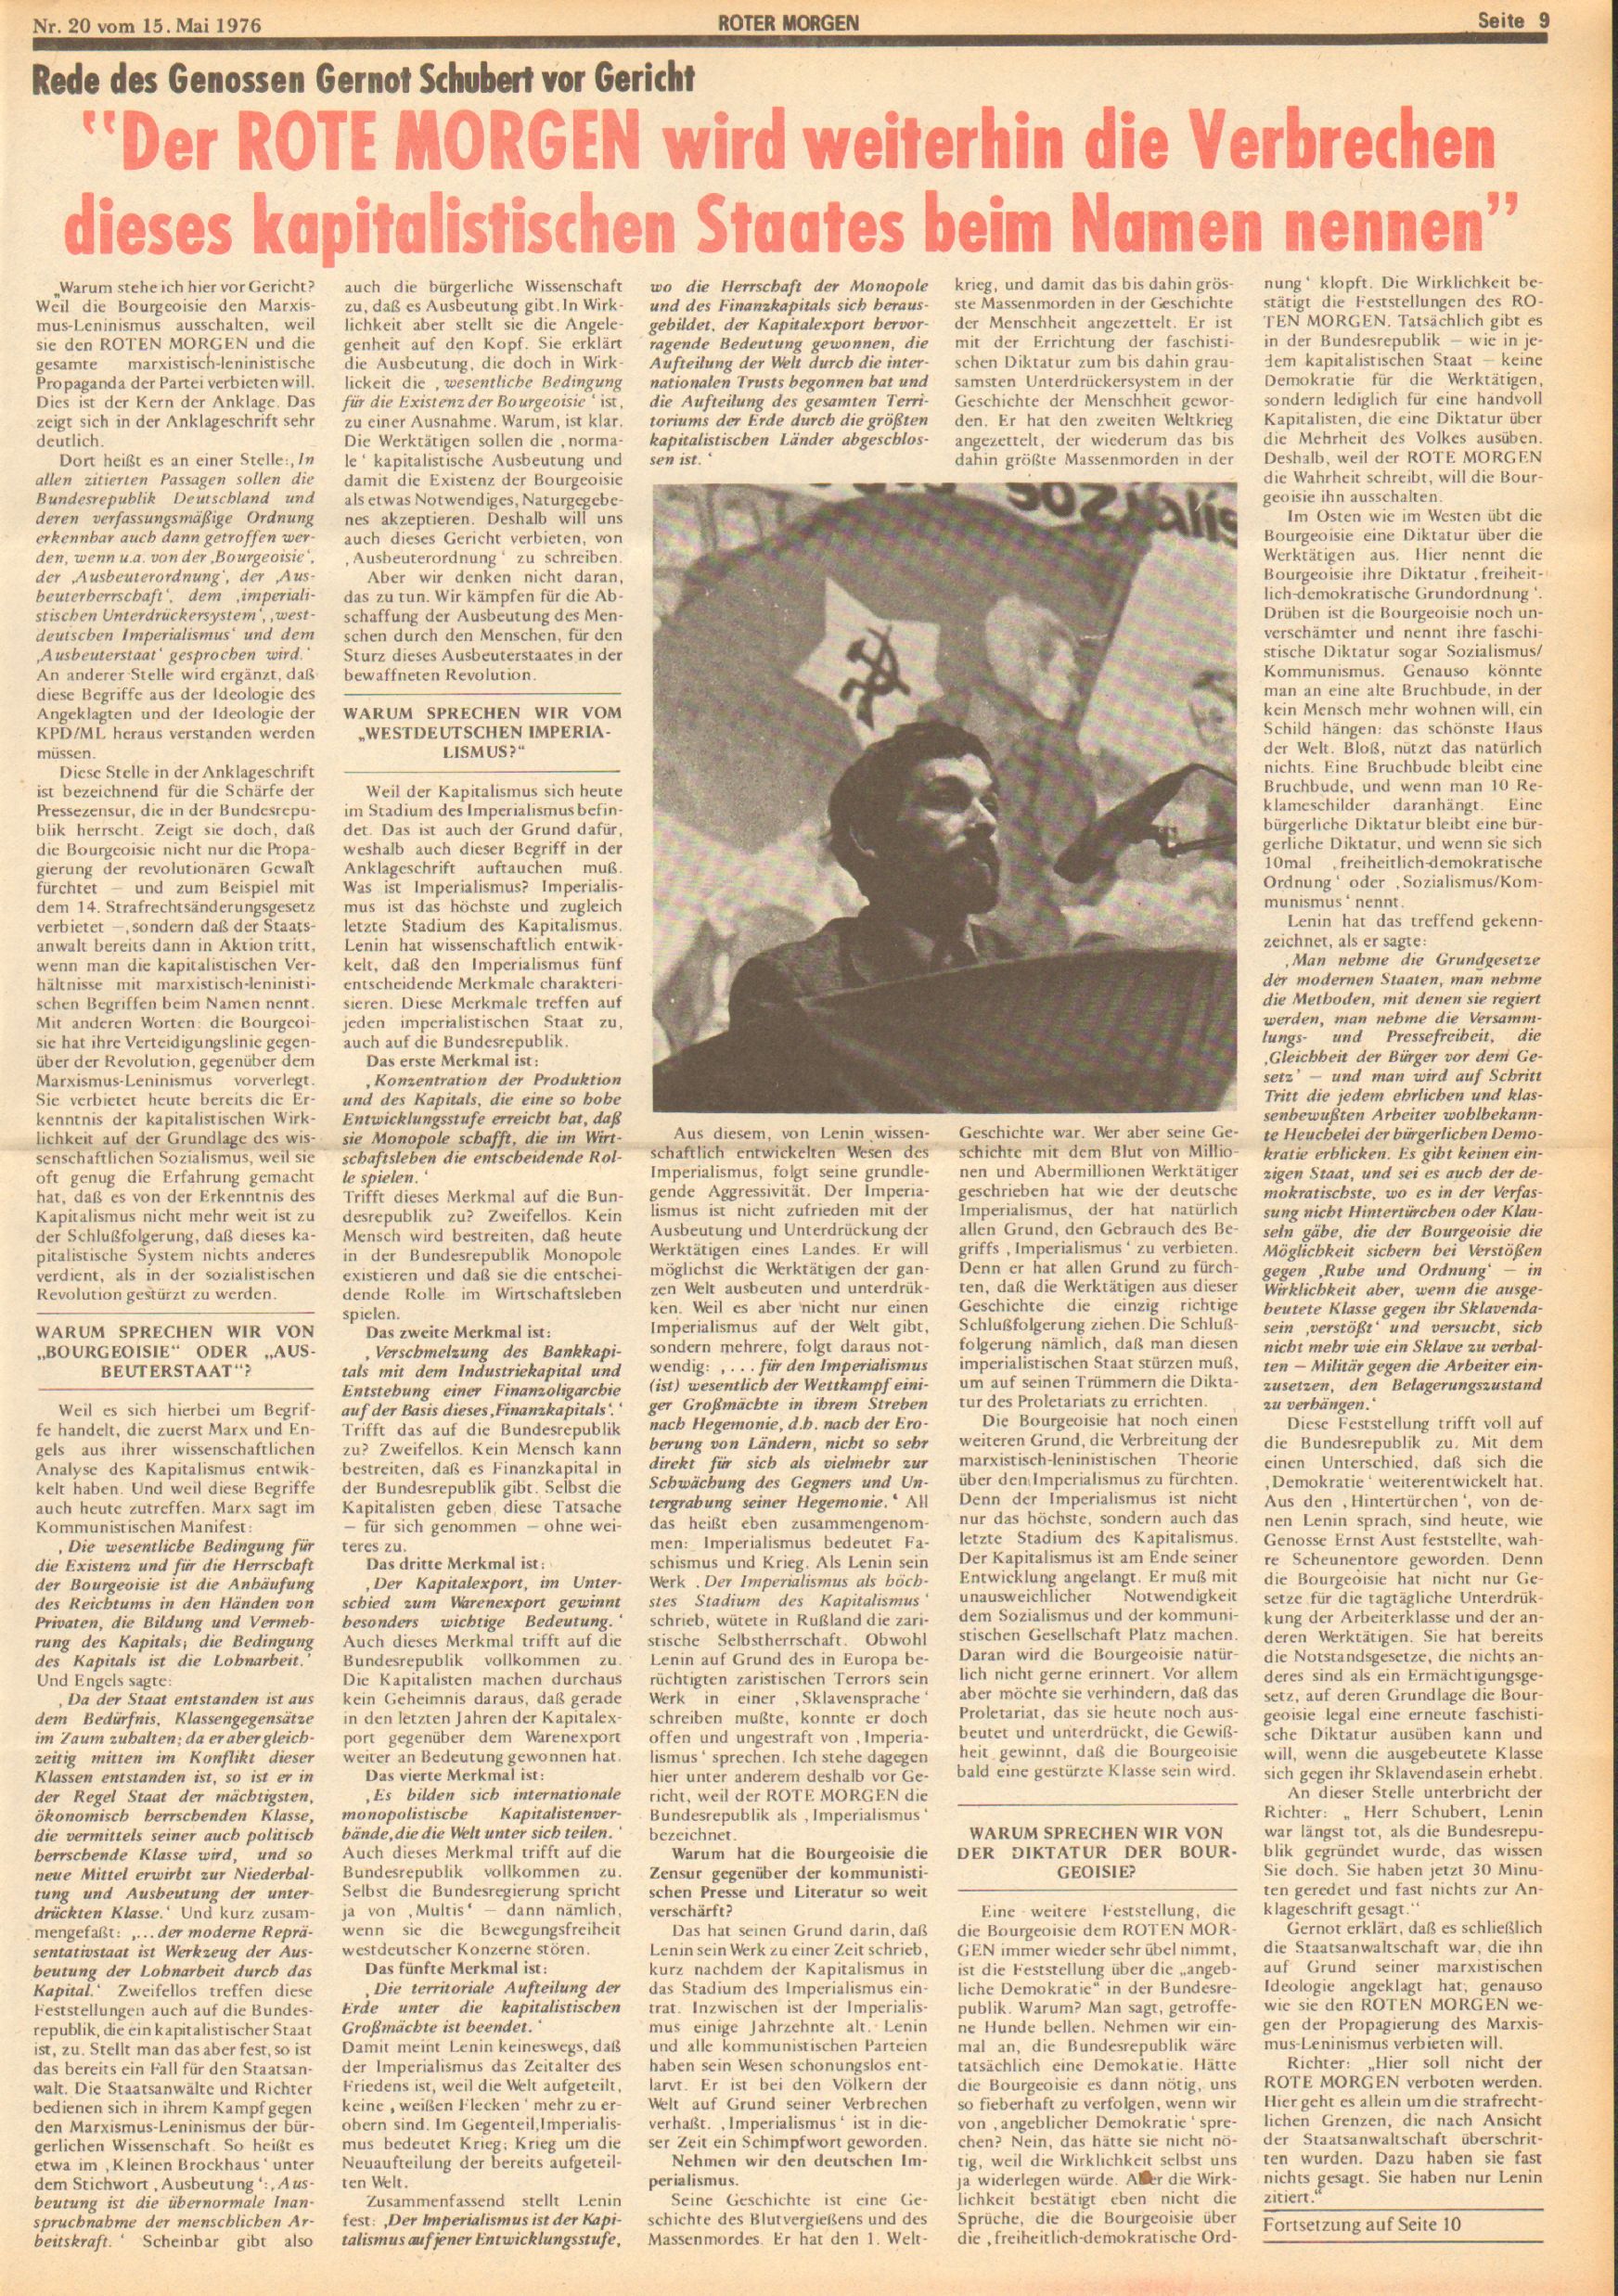 Roter Morgen, 10. Jg., 15. Mai 1976, Nr. 20, Seite 9